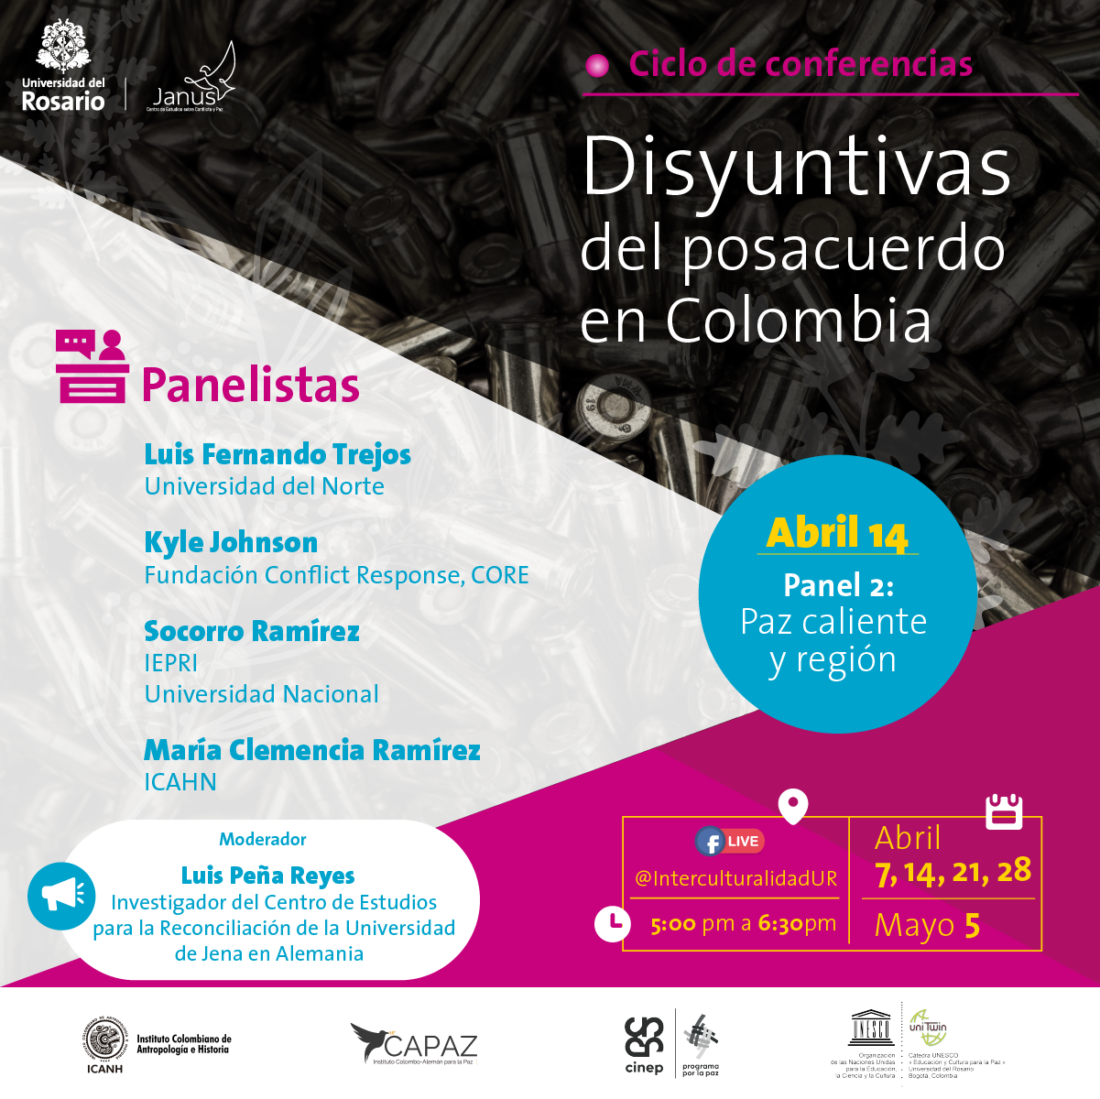 El ciclo de conferencias es organizado por el grupo Janus con apoyo del Instituto CAPAZ y se desarrollará entre abril y mayo de 2021.